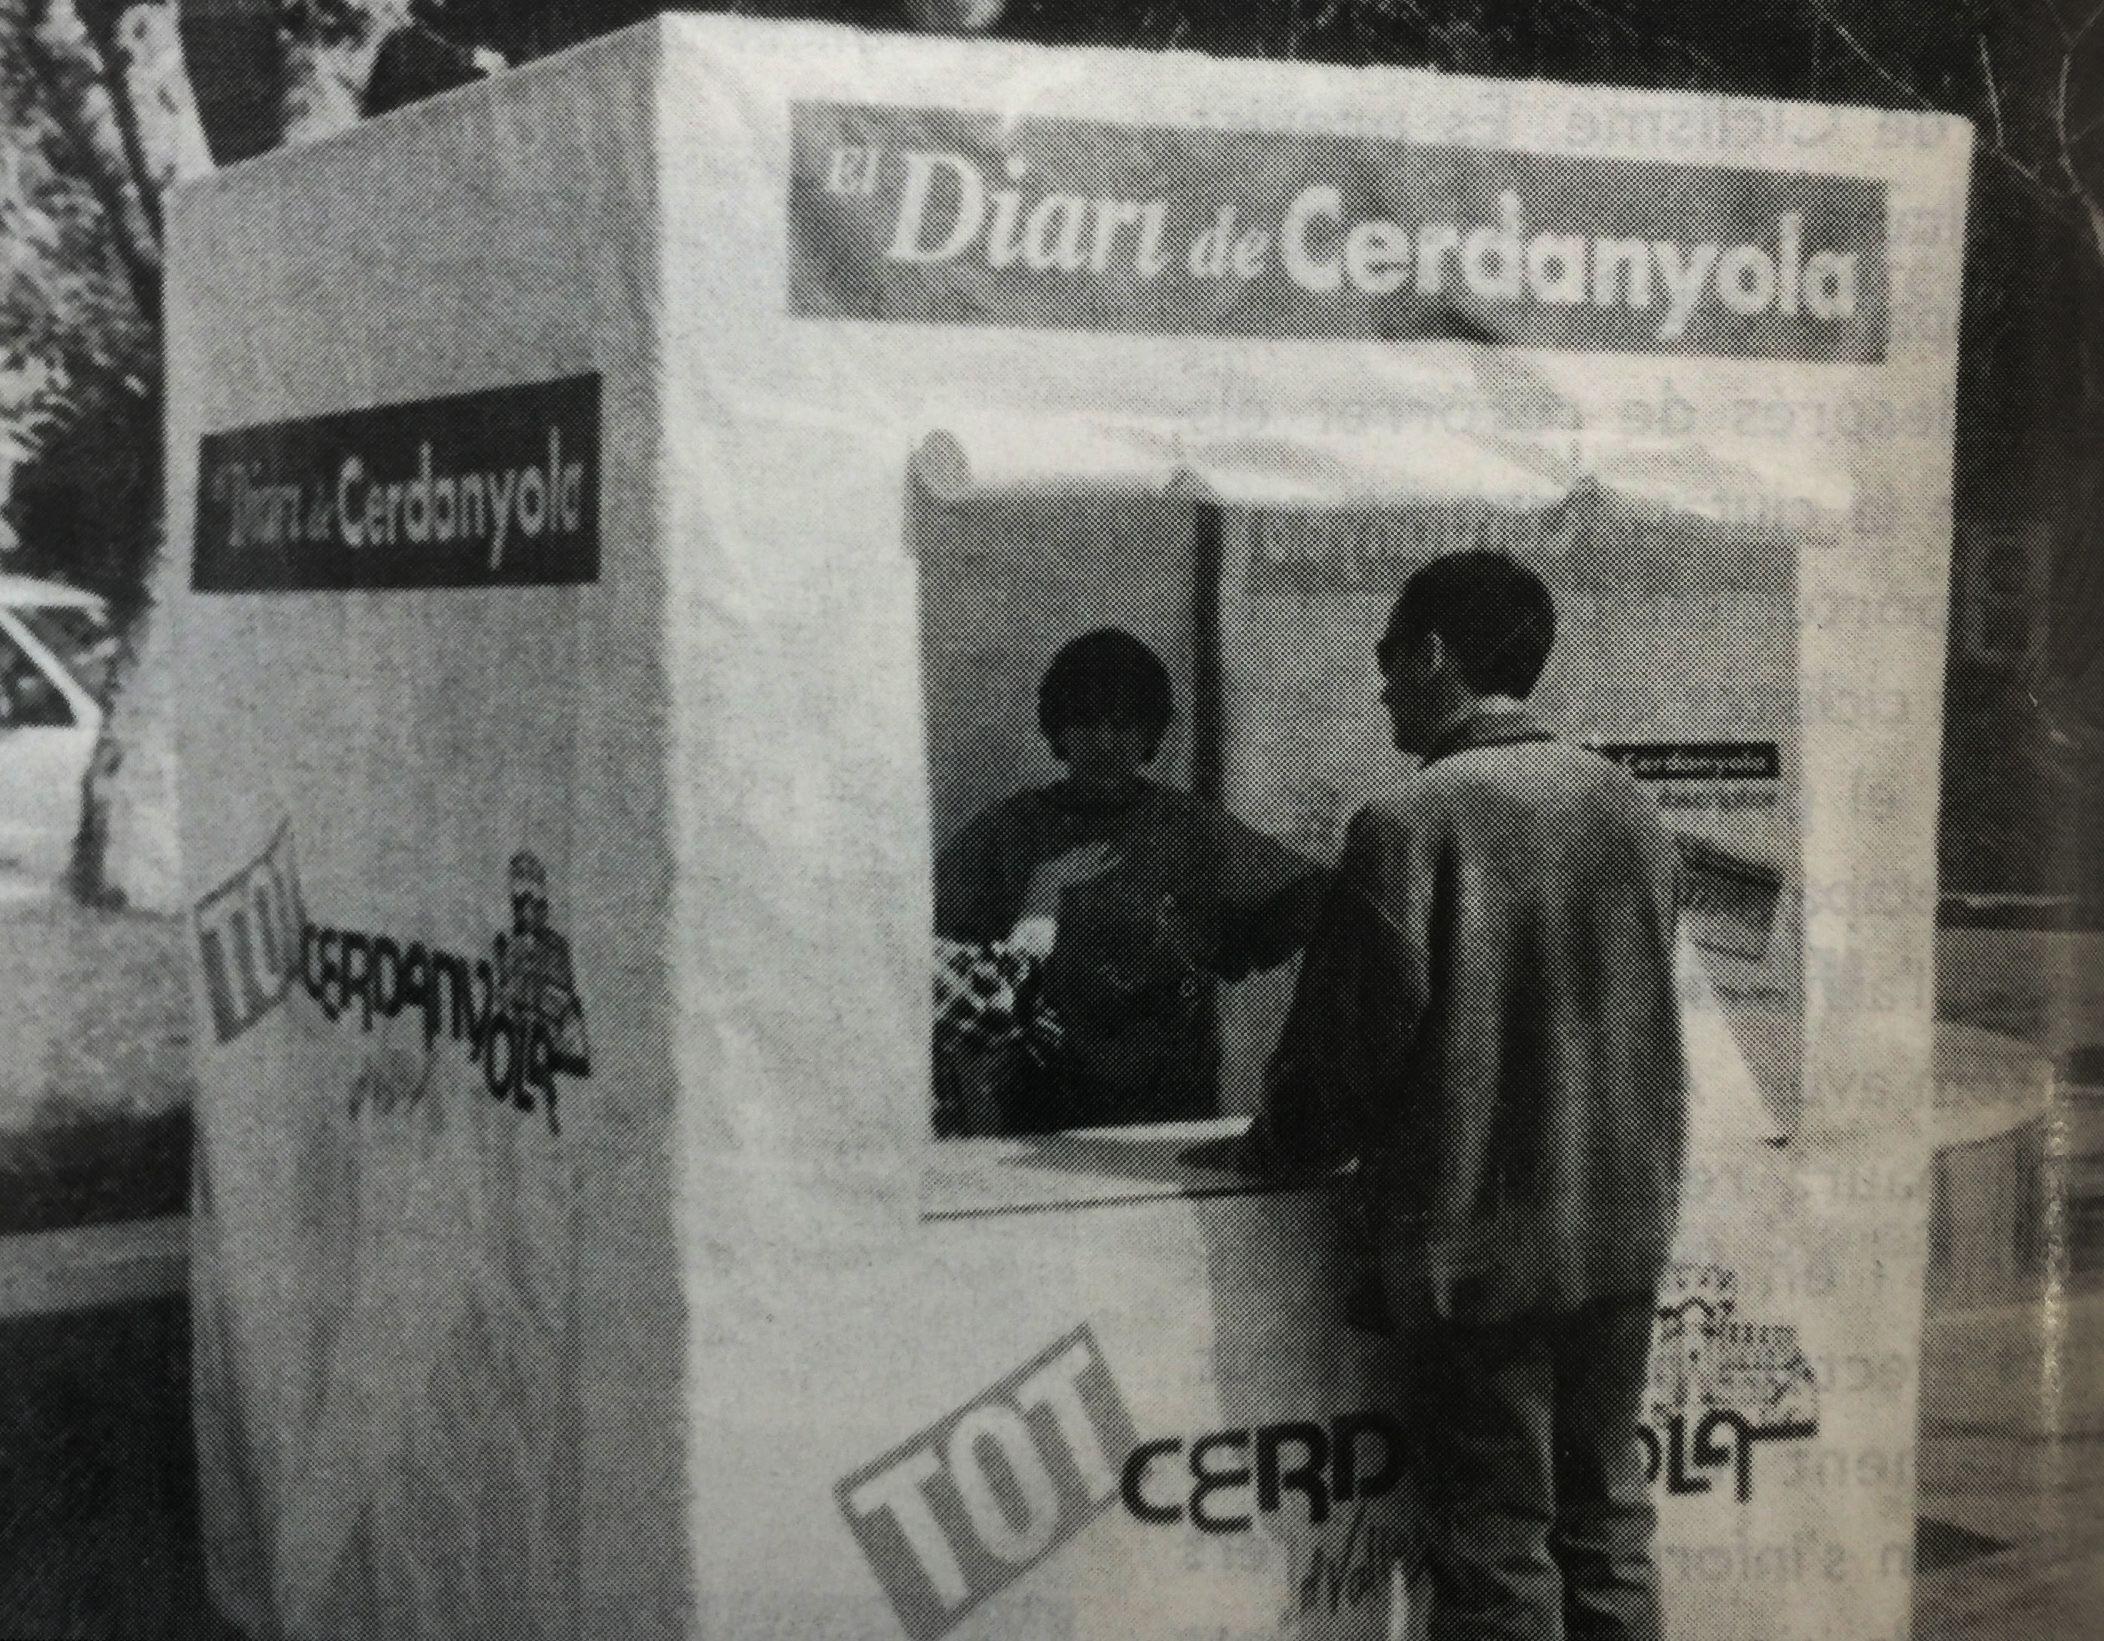 Stand promocional d'"El Diari de Cerdanyola" (abril, 1999). FOTO: Arxiu, TOT núm 602